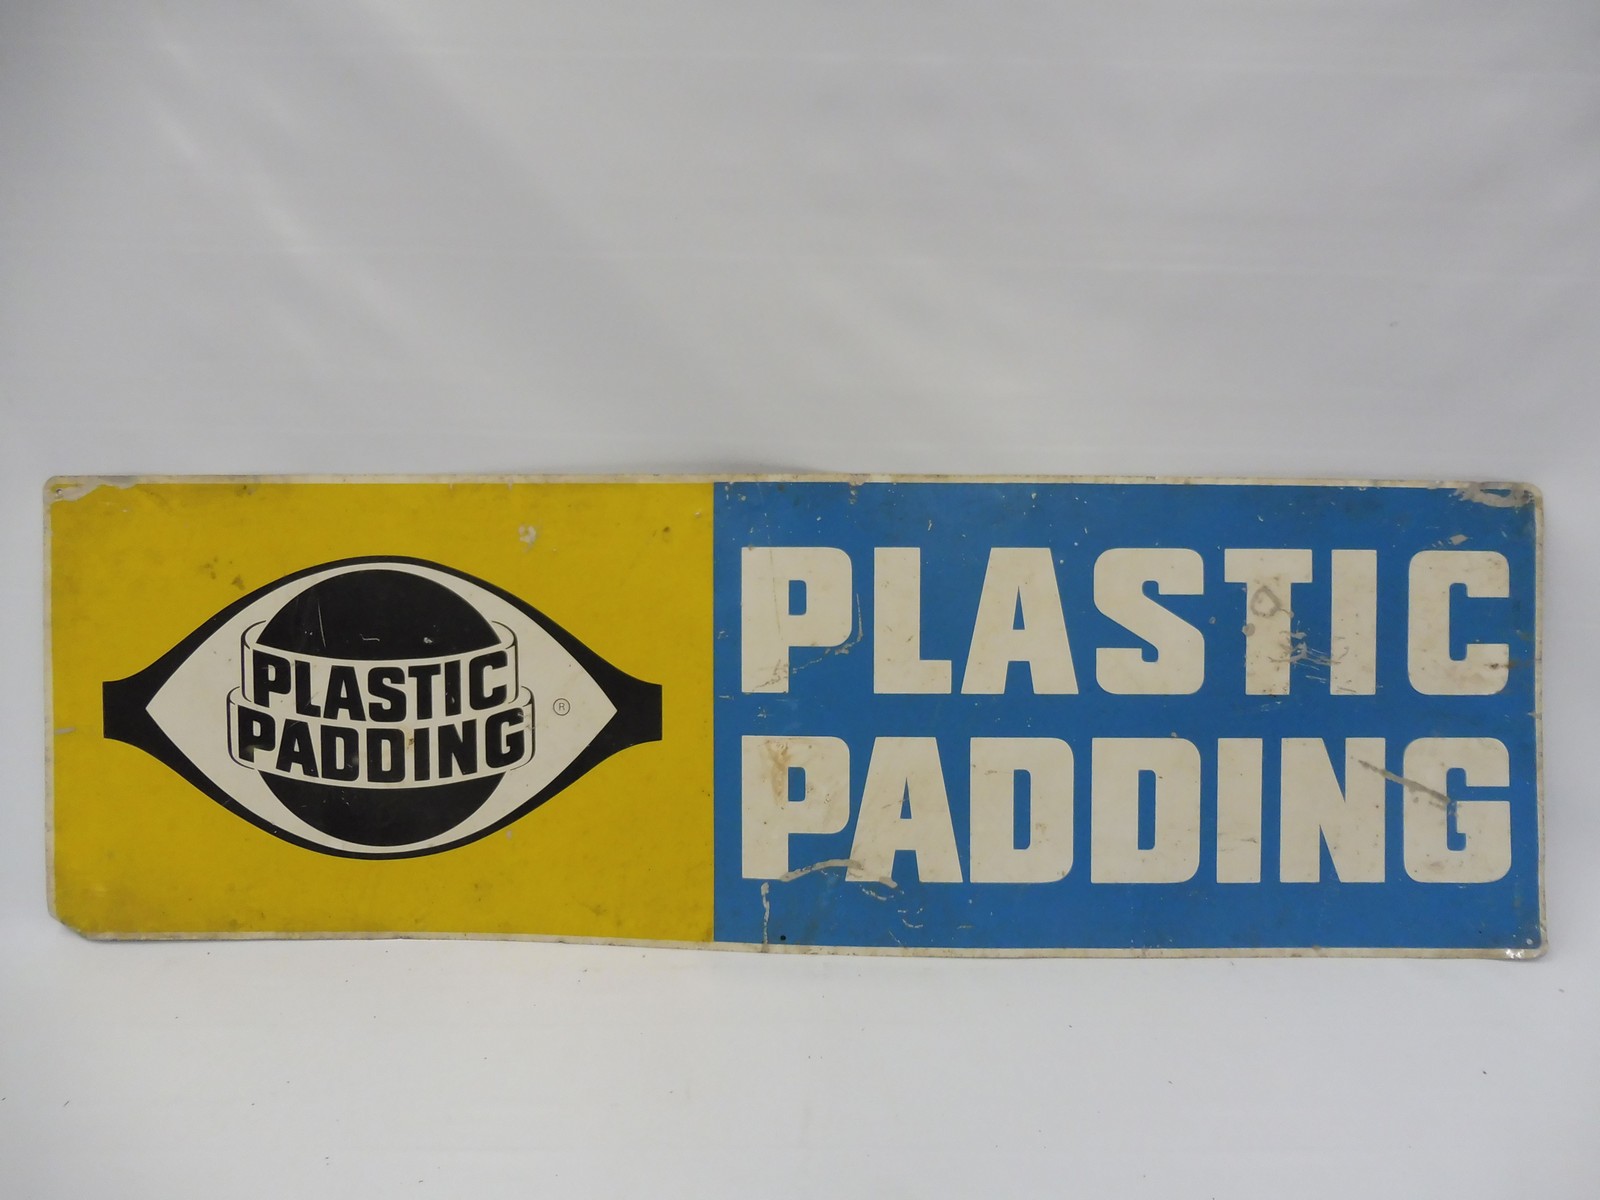 A Plastic Padding rectangular aluminium sign, 48 x 15".